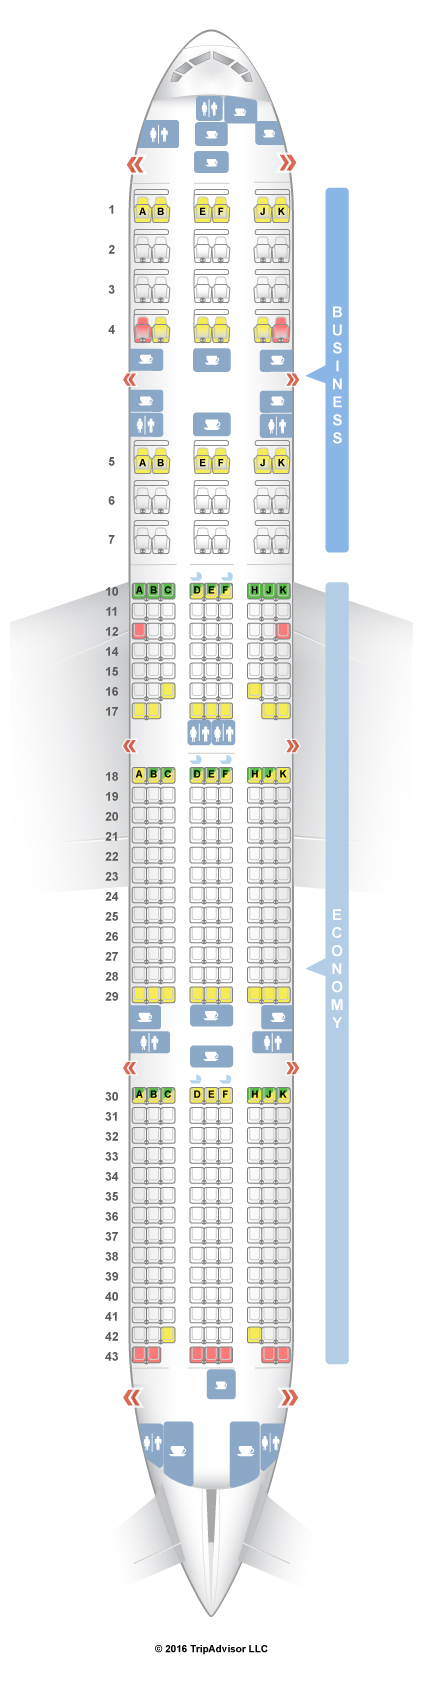 Seatguru Seat Map Qatar Airways Boeing 777 300er 77w V3 Seatguru